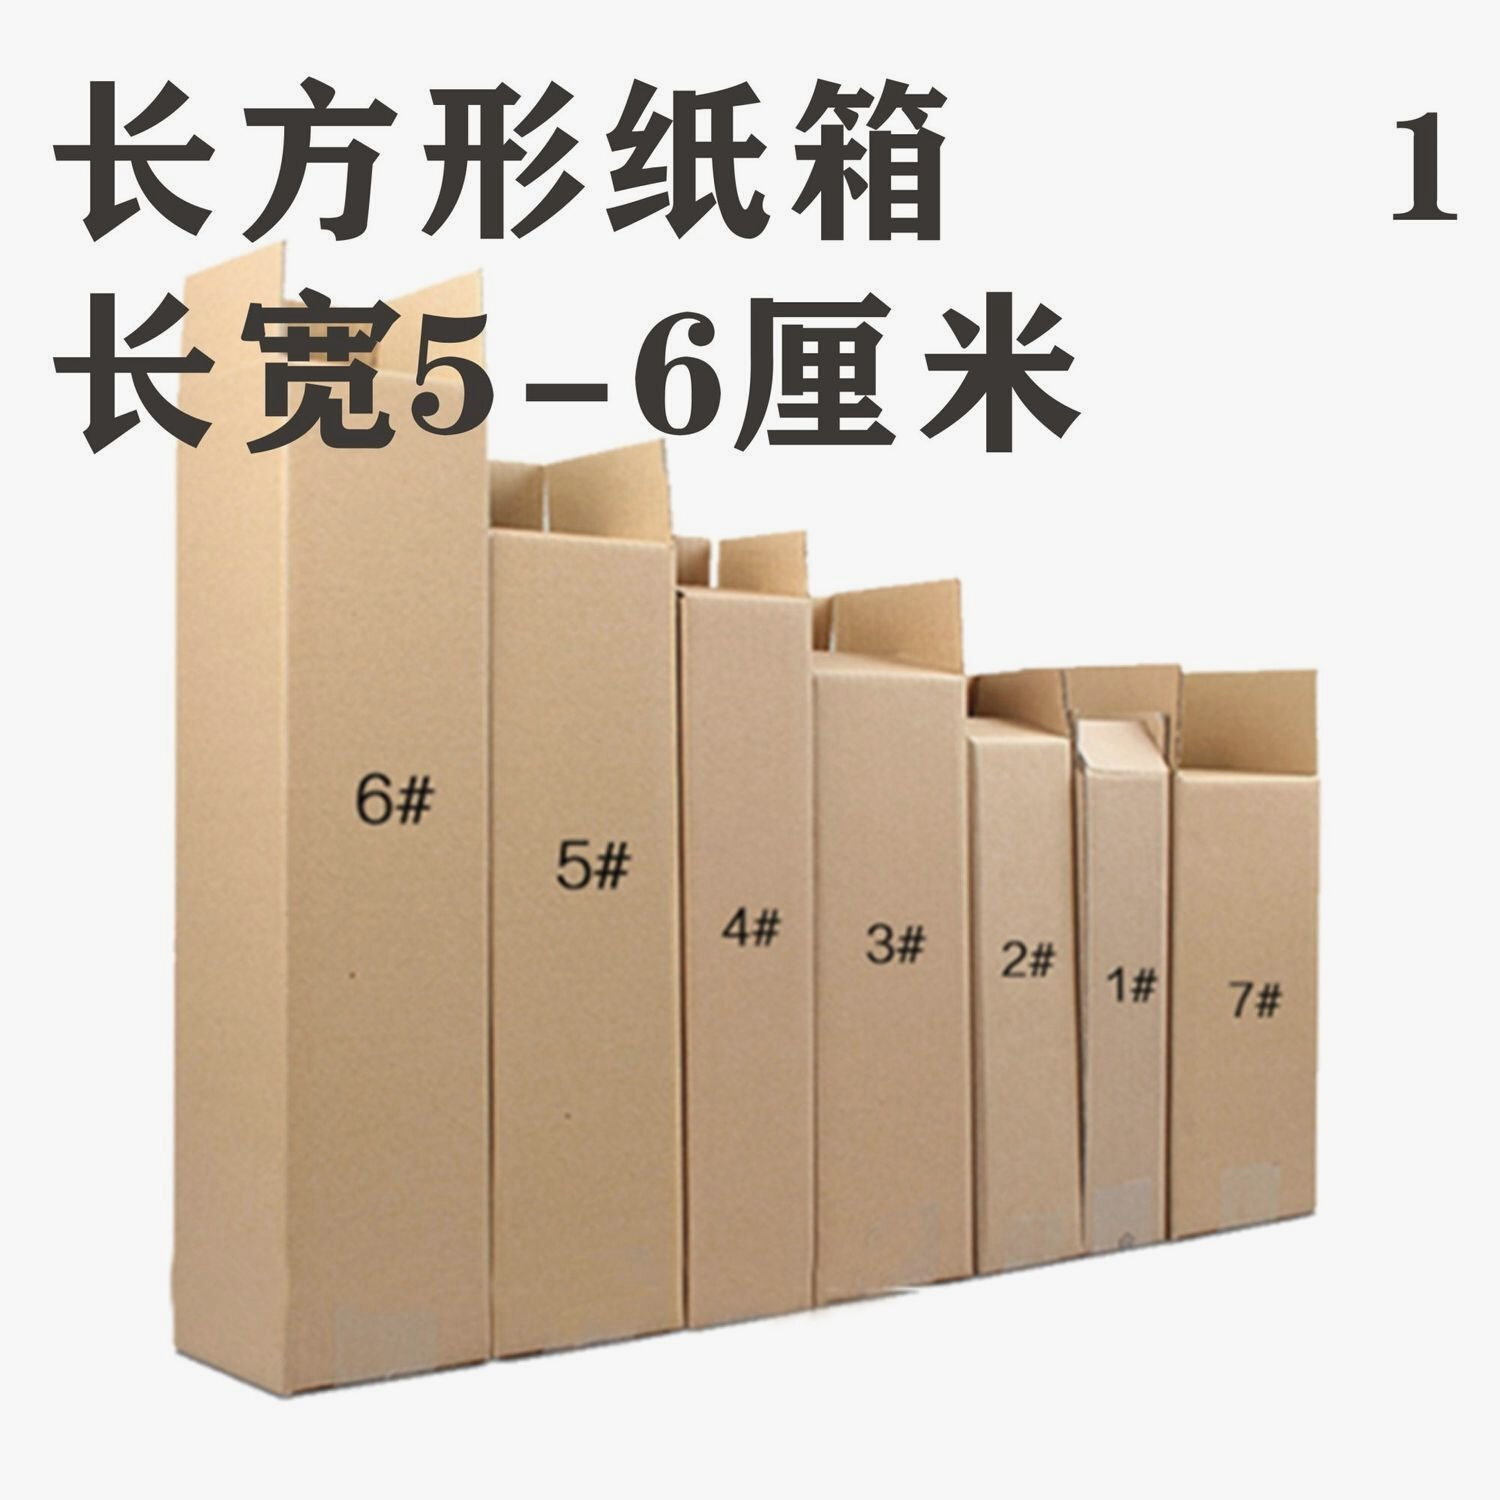 长方形纸箱长宽5-6厘米cm雨伞化妆品快递发货打包长条型纸盒